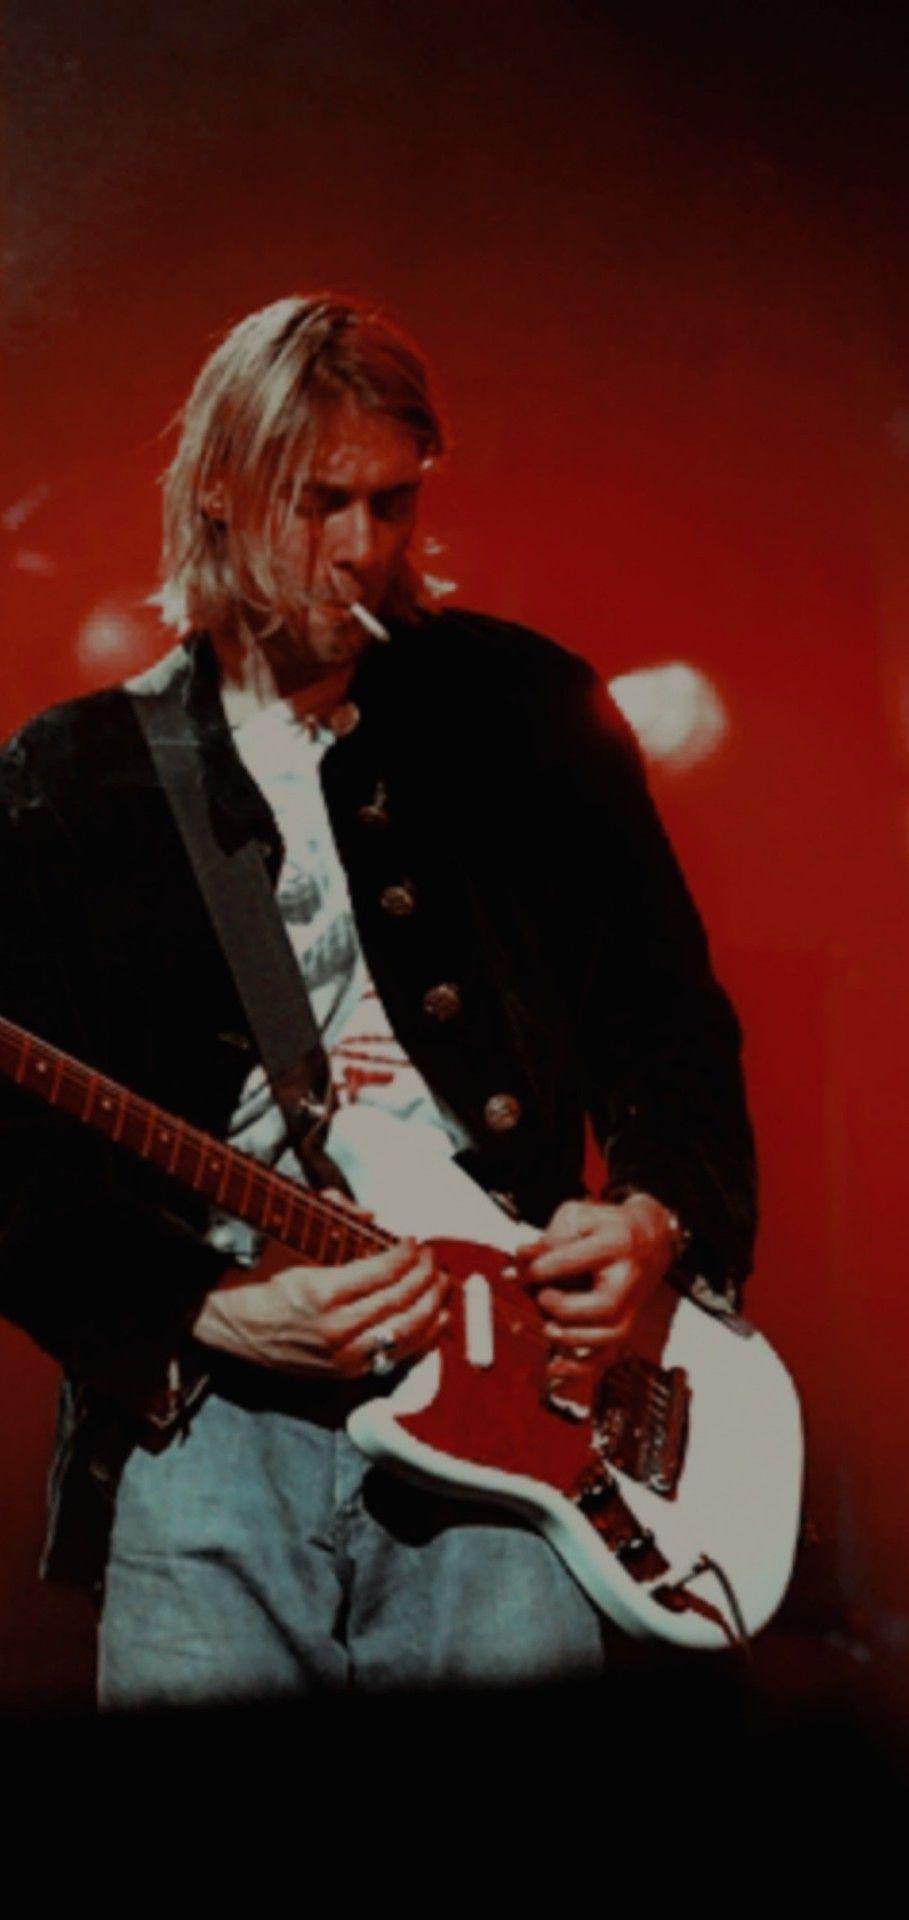 Kurt Cobain Iphone Wallpapers Top Free Kurt Cobain Iphone Backgrounds Wallpaperaccess 2939